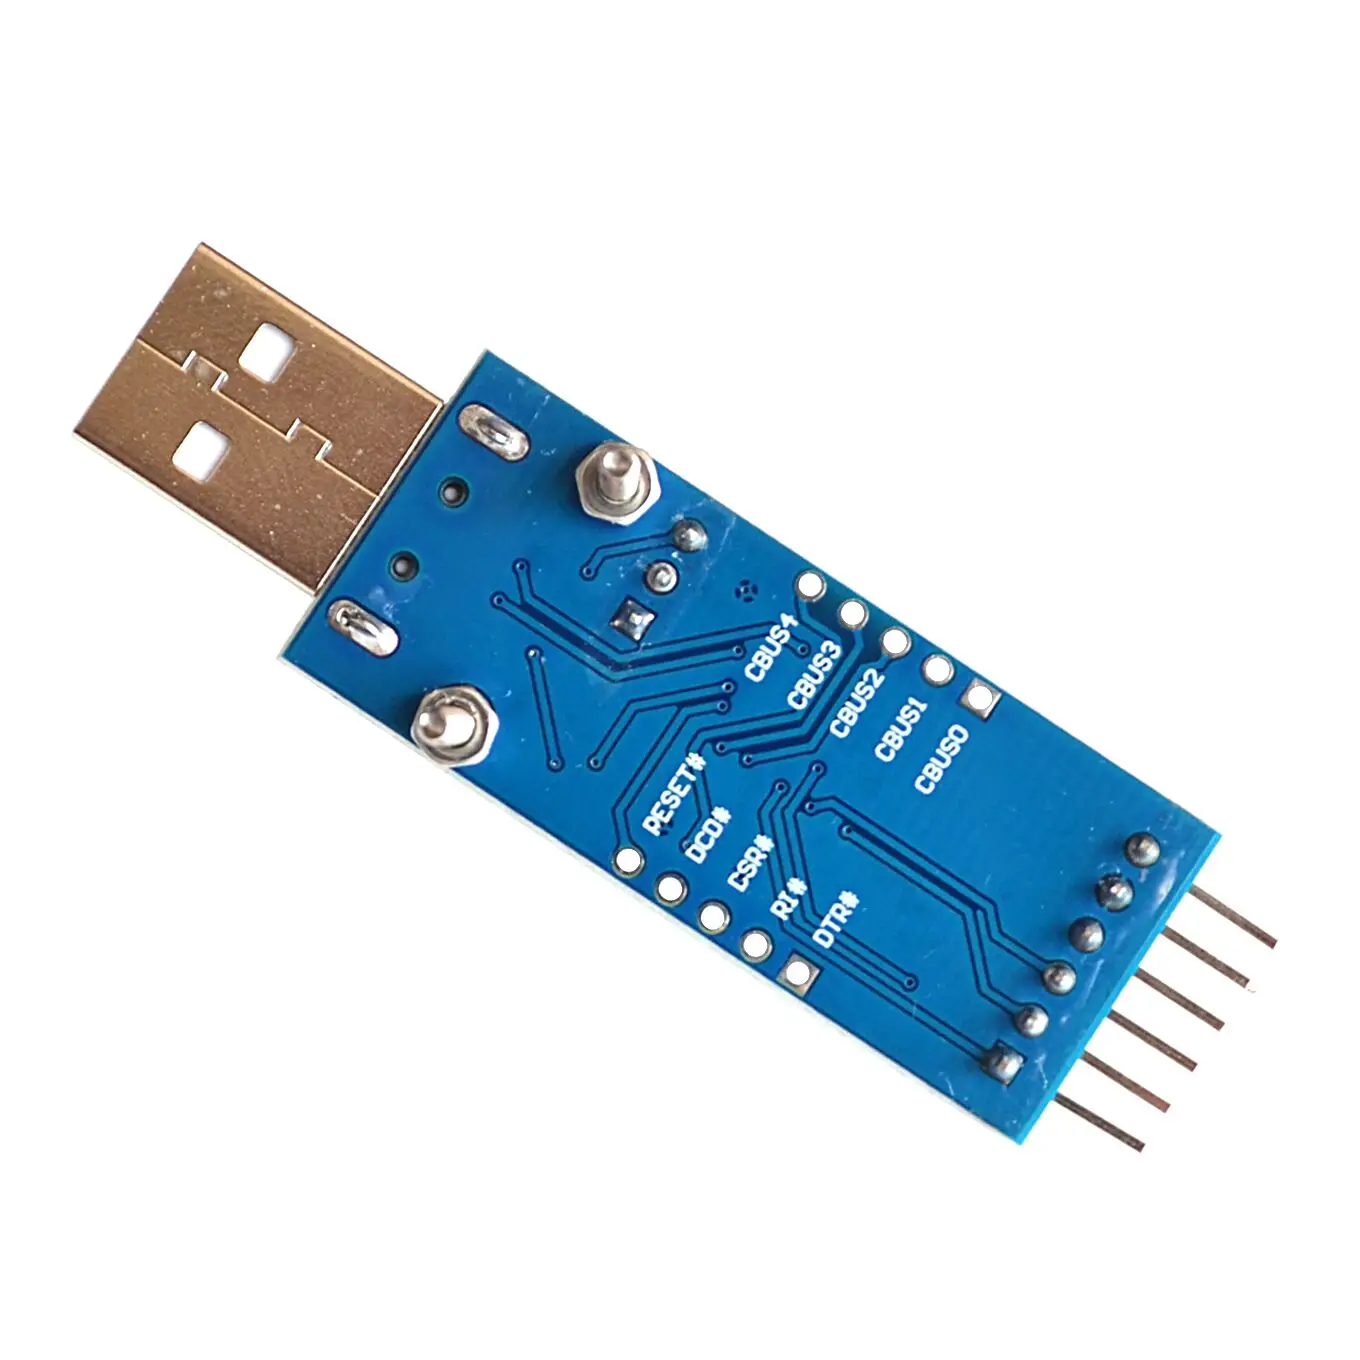 Detalii despre FT232 USB UART Bord (Tip A) FT232R FT232RL la RS232 TTL Serial Module Kit